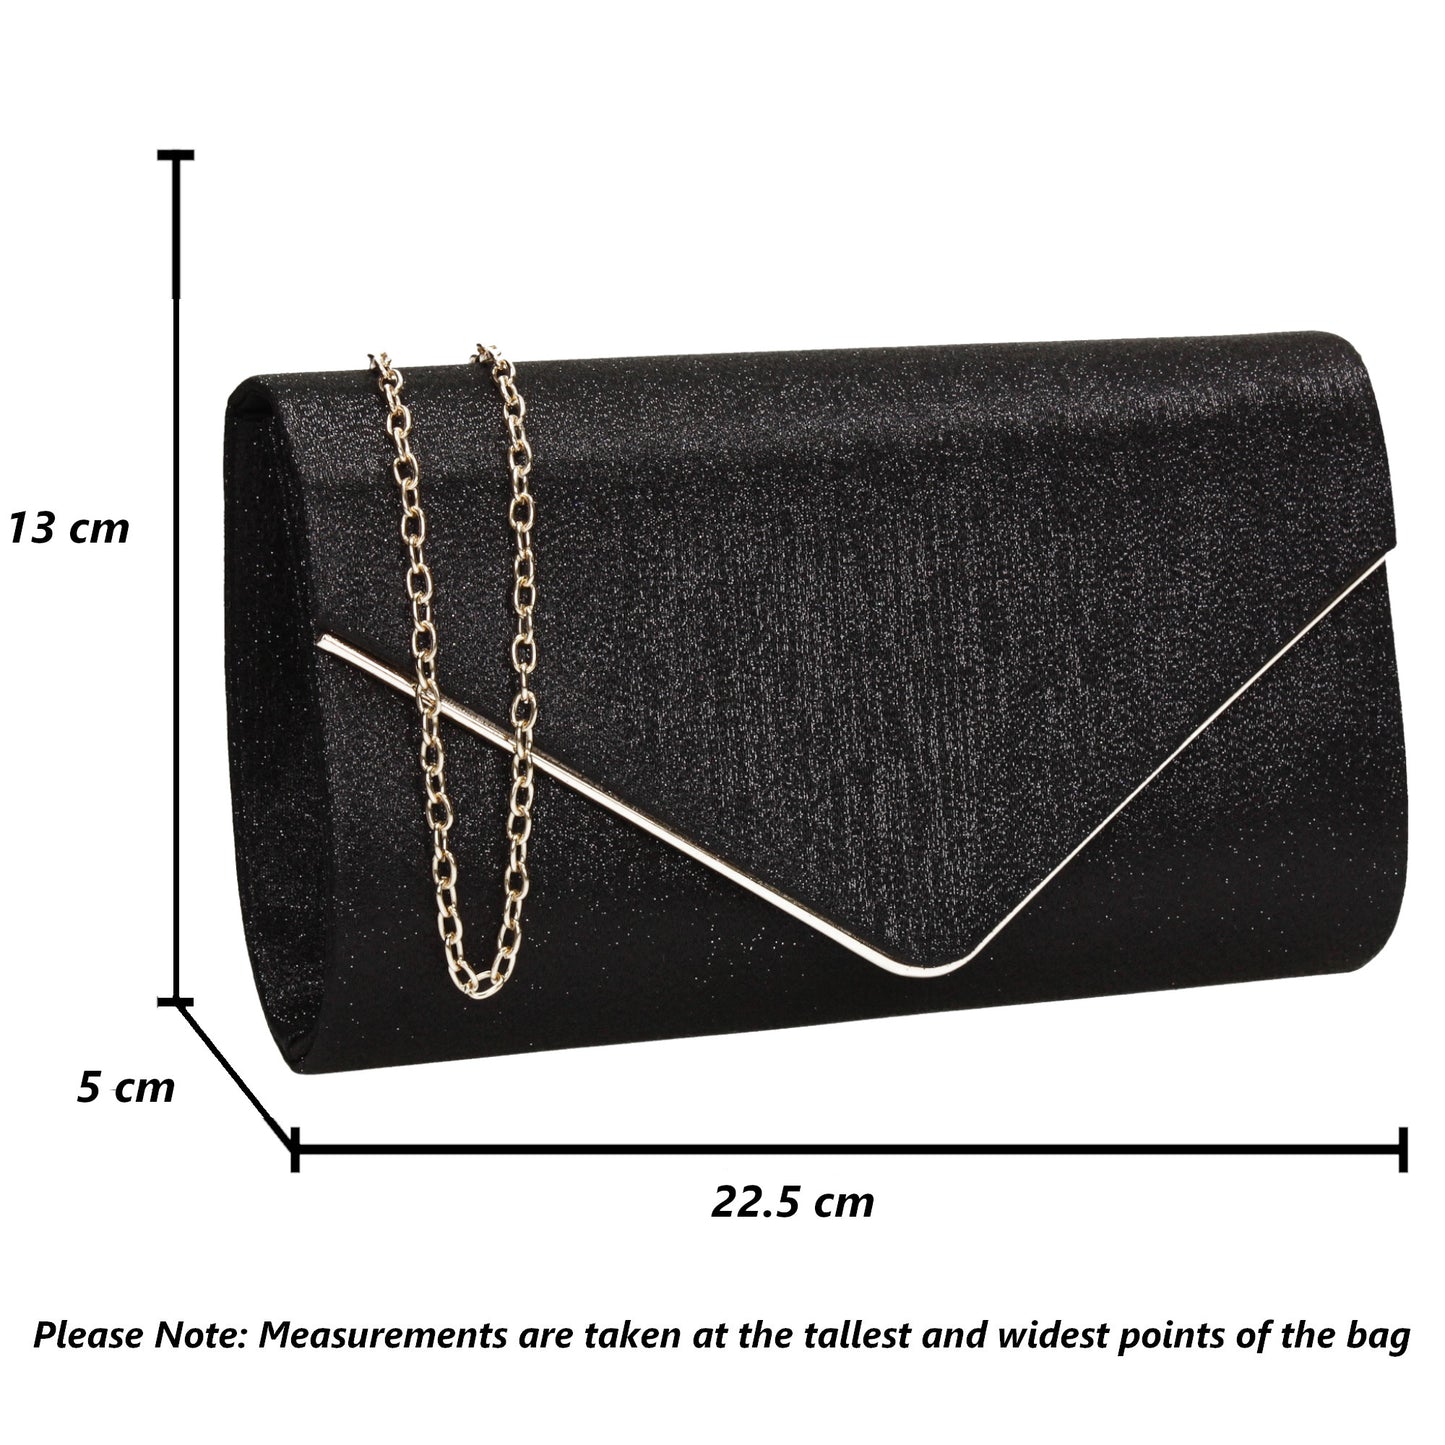 SWANKYSWANS Maya Clutch Bag Black Cute Cheap Clutch Bag For Weddings School and Work